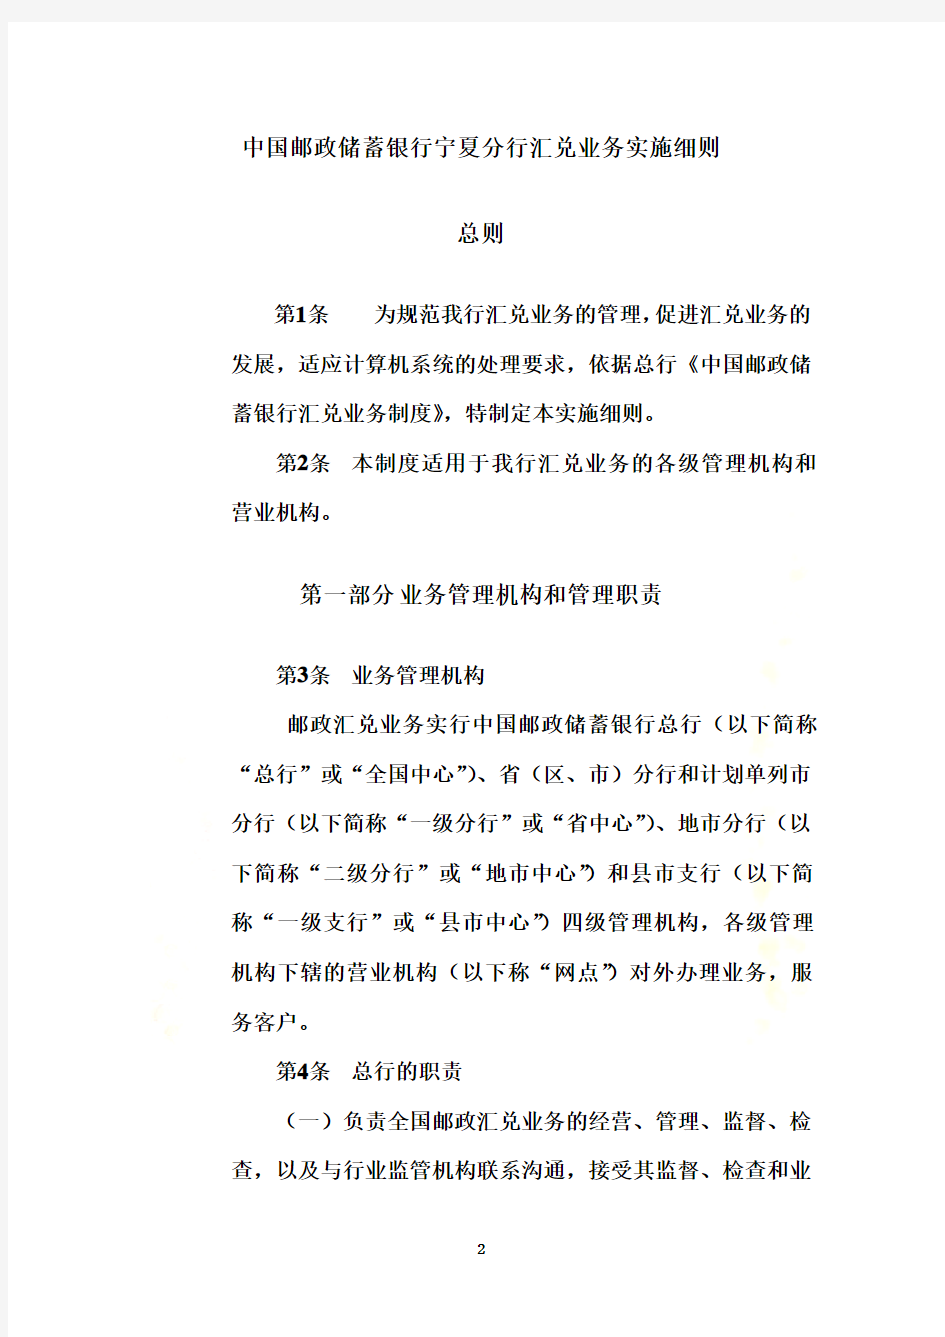 中国邮政储蓄银行及业务管理细则(DOC 75页)